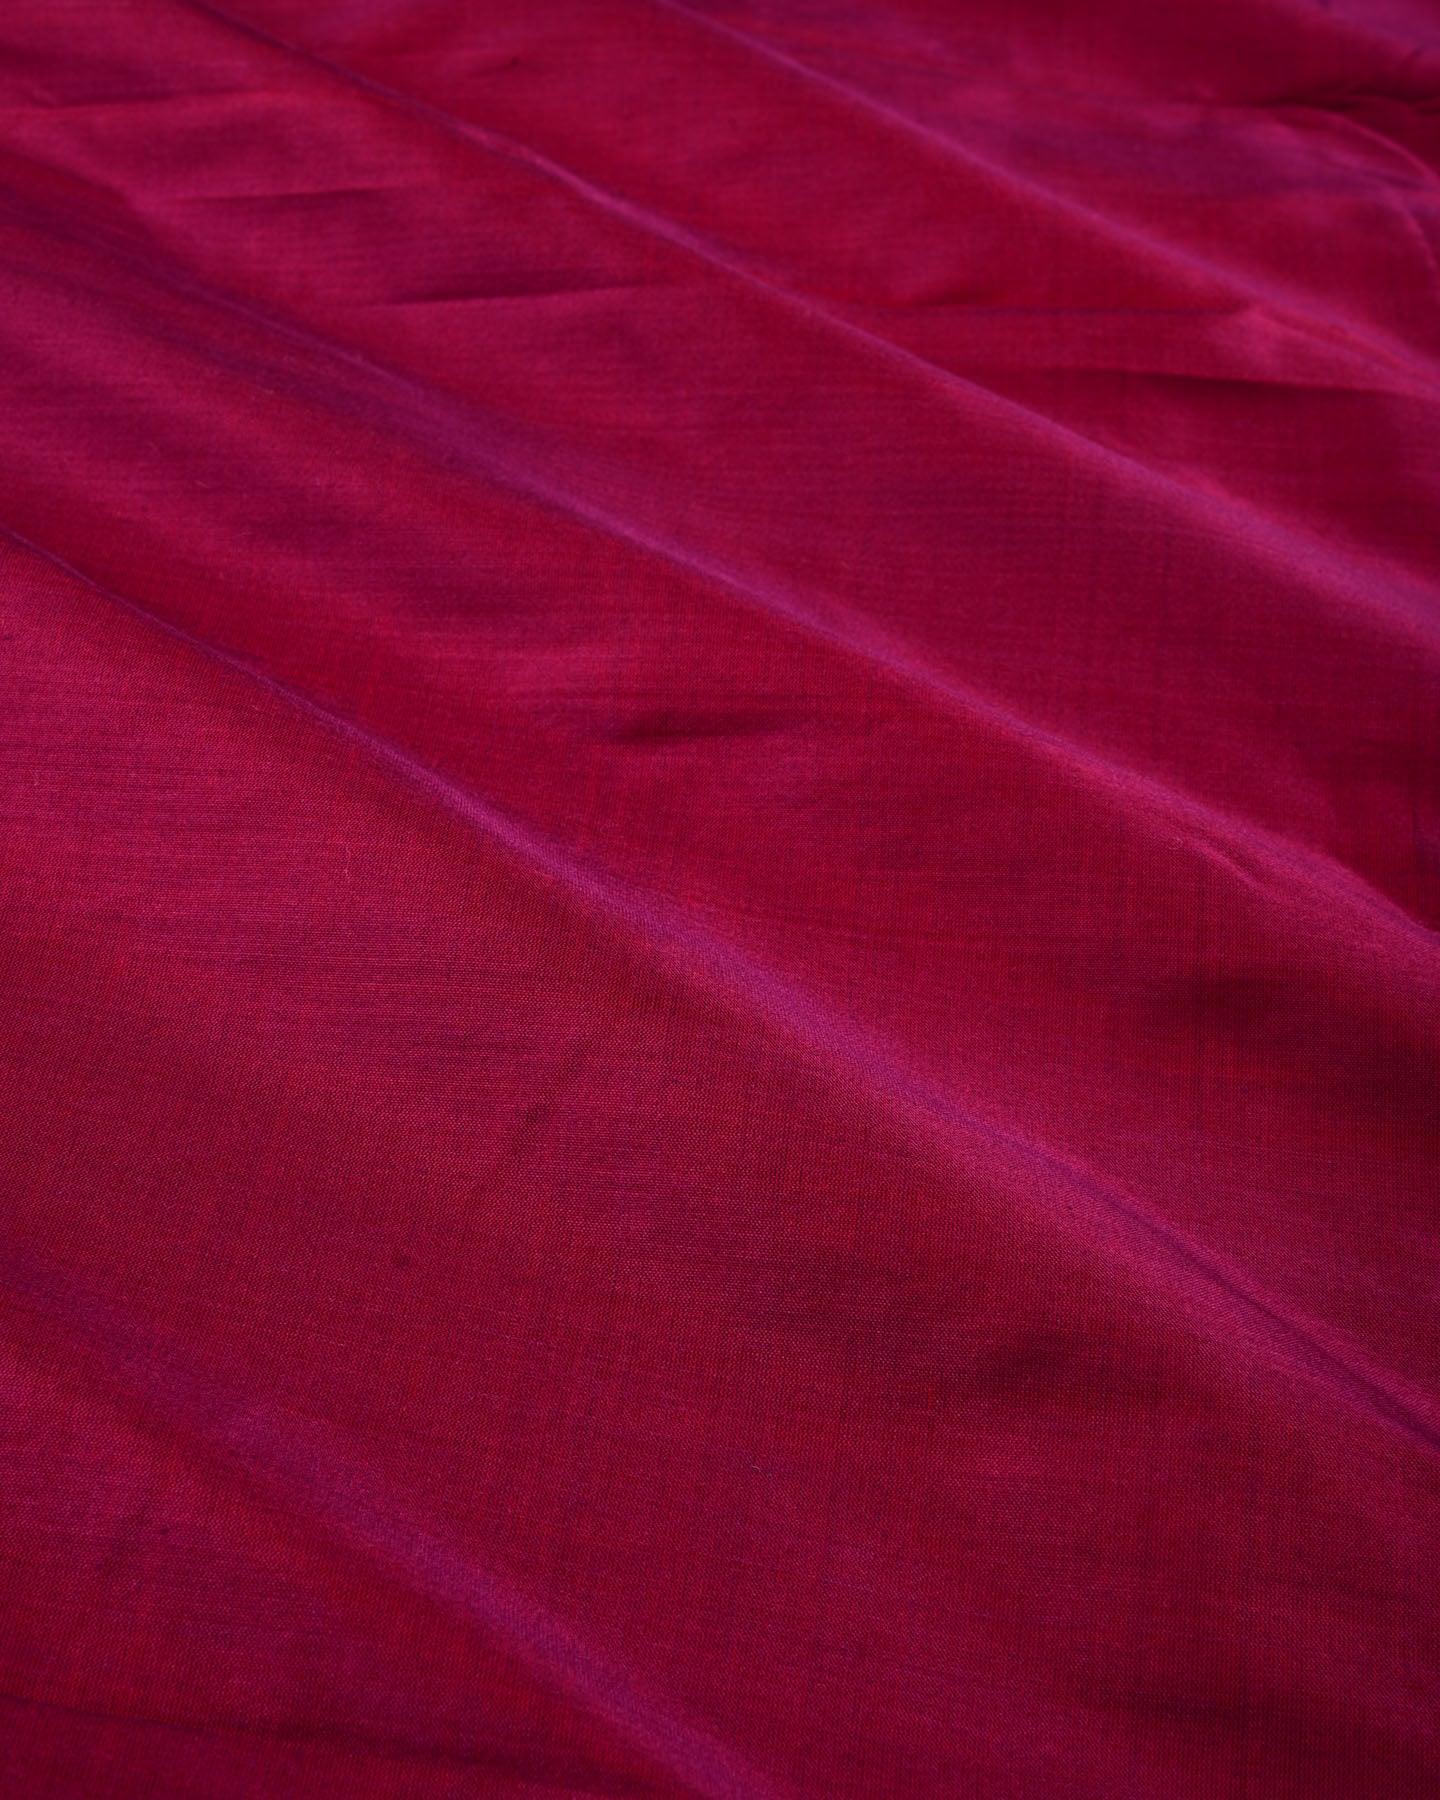 Shot Red Purple Banarasi Plain Woven Spun Silk Fabric - By HolyWeaves, Benares